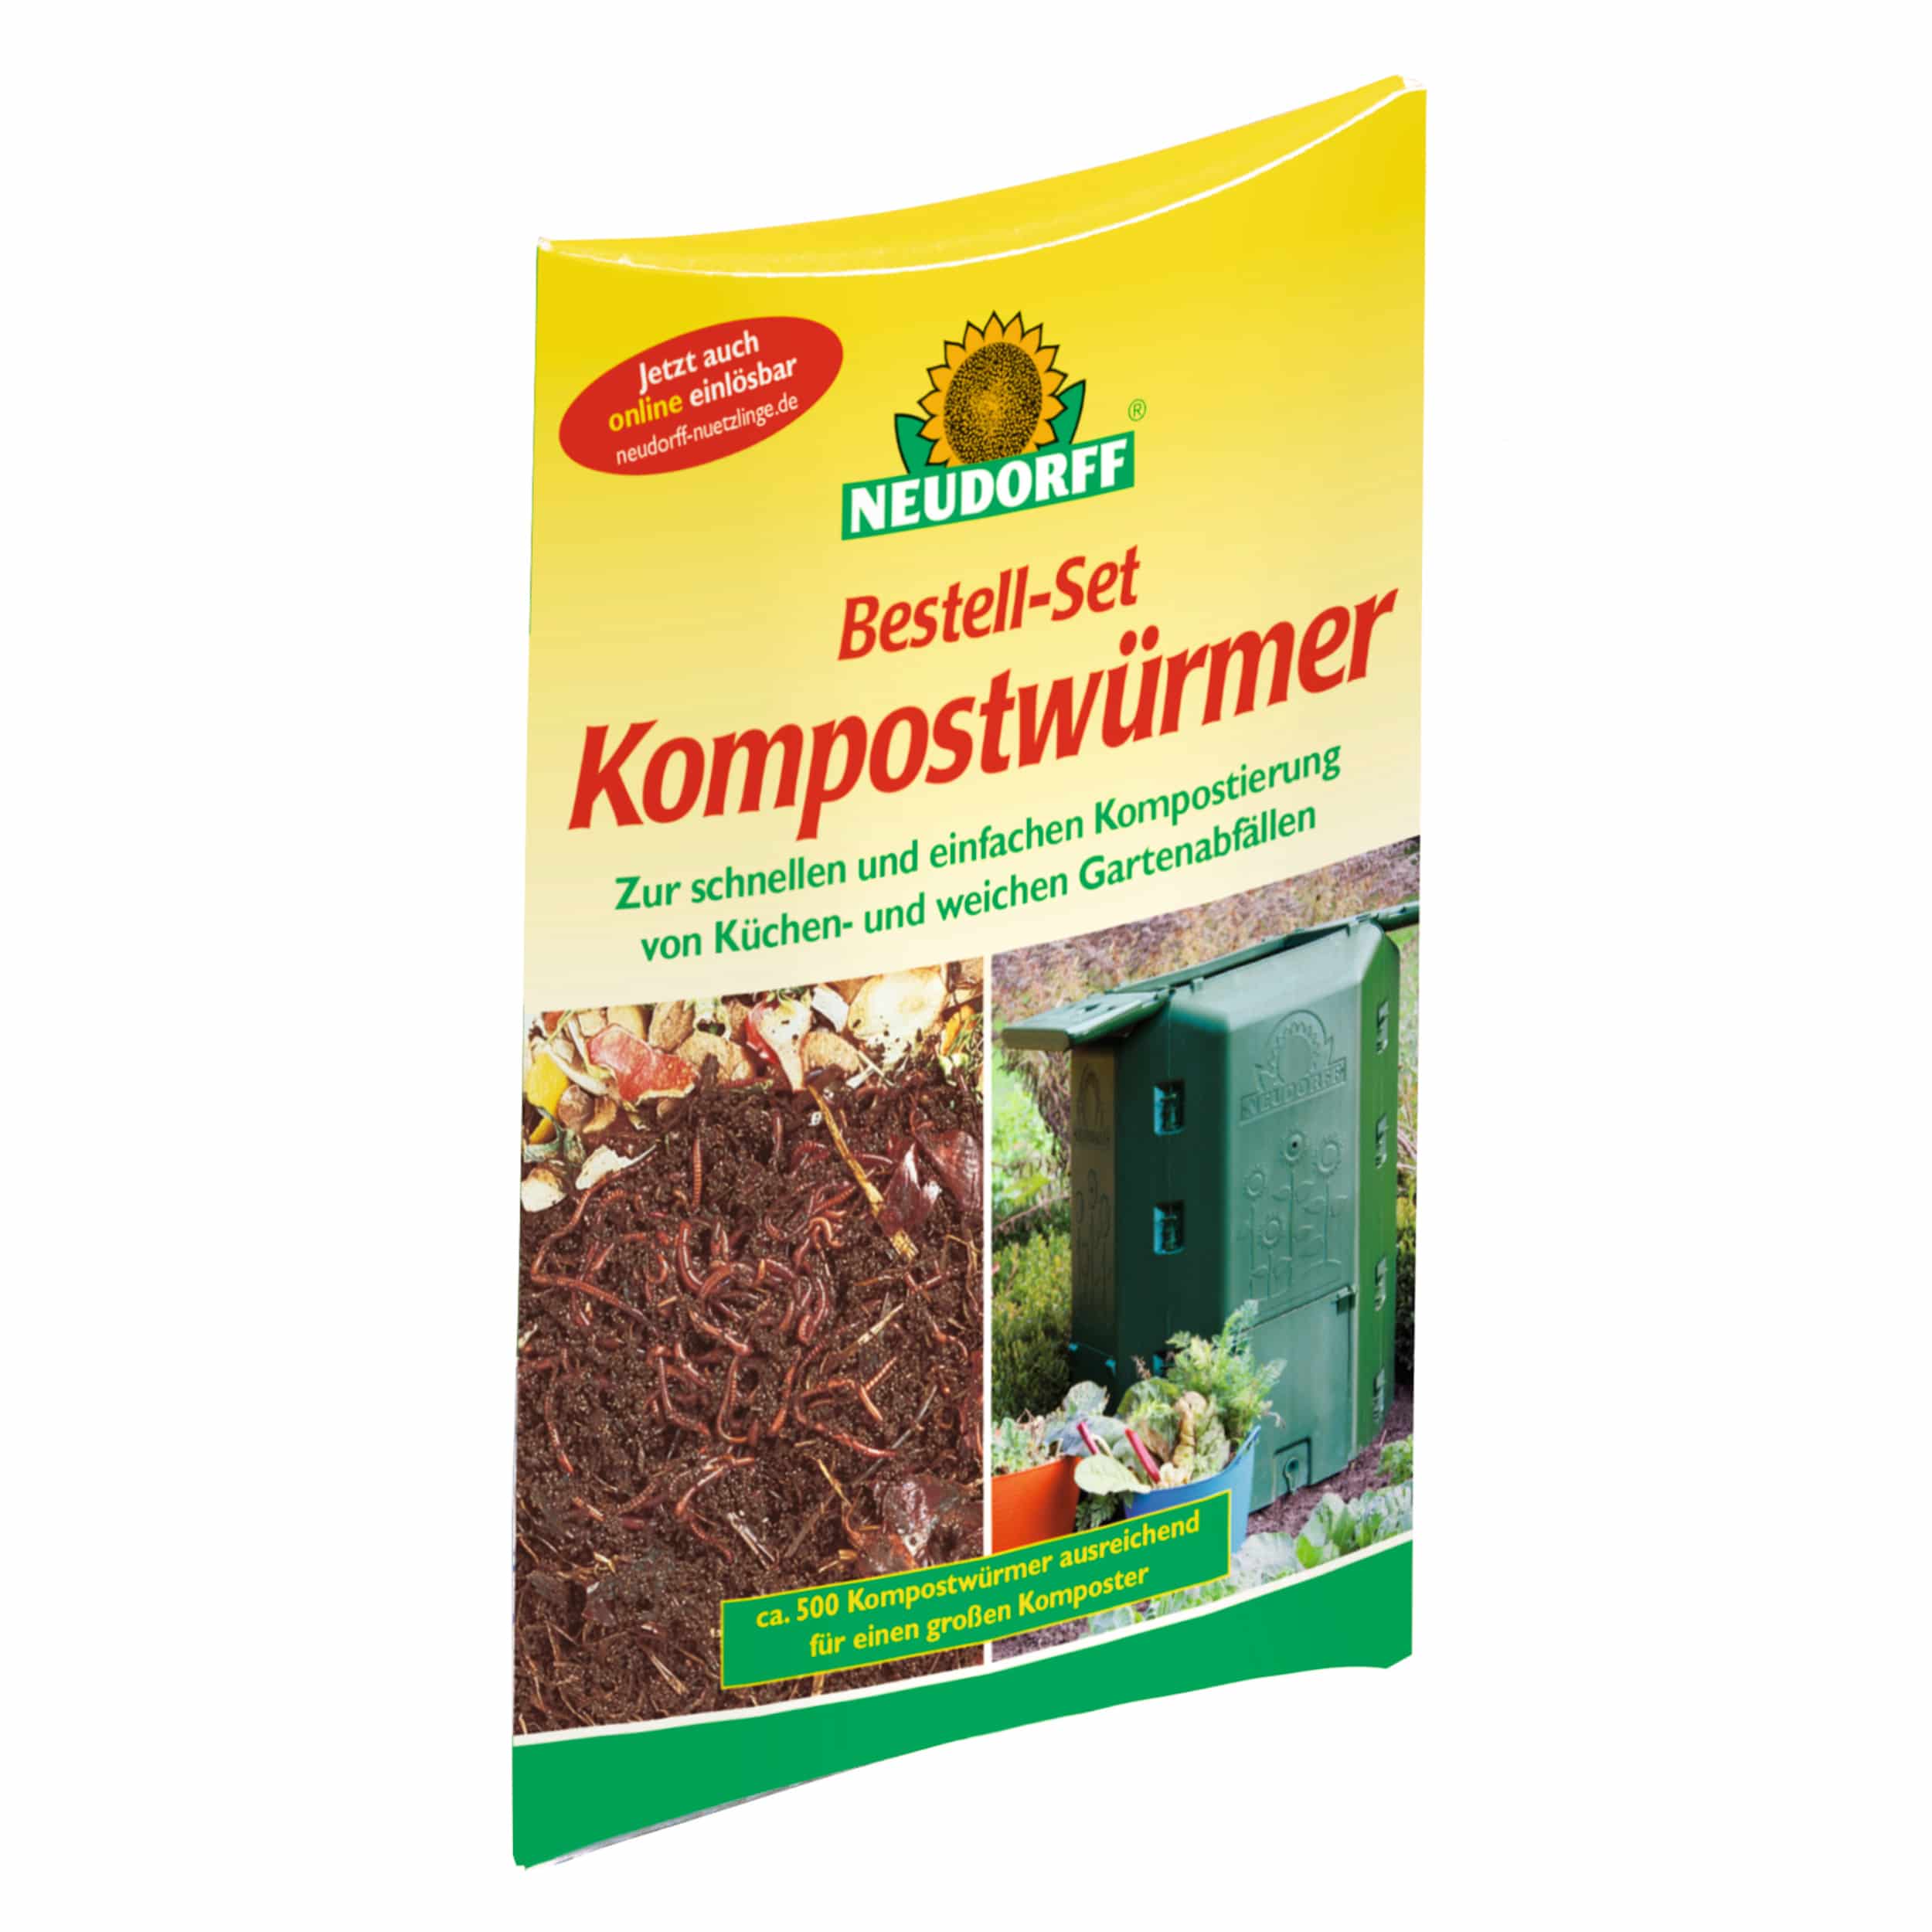 Bestellset Kompostwürmer 1 kg